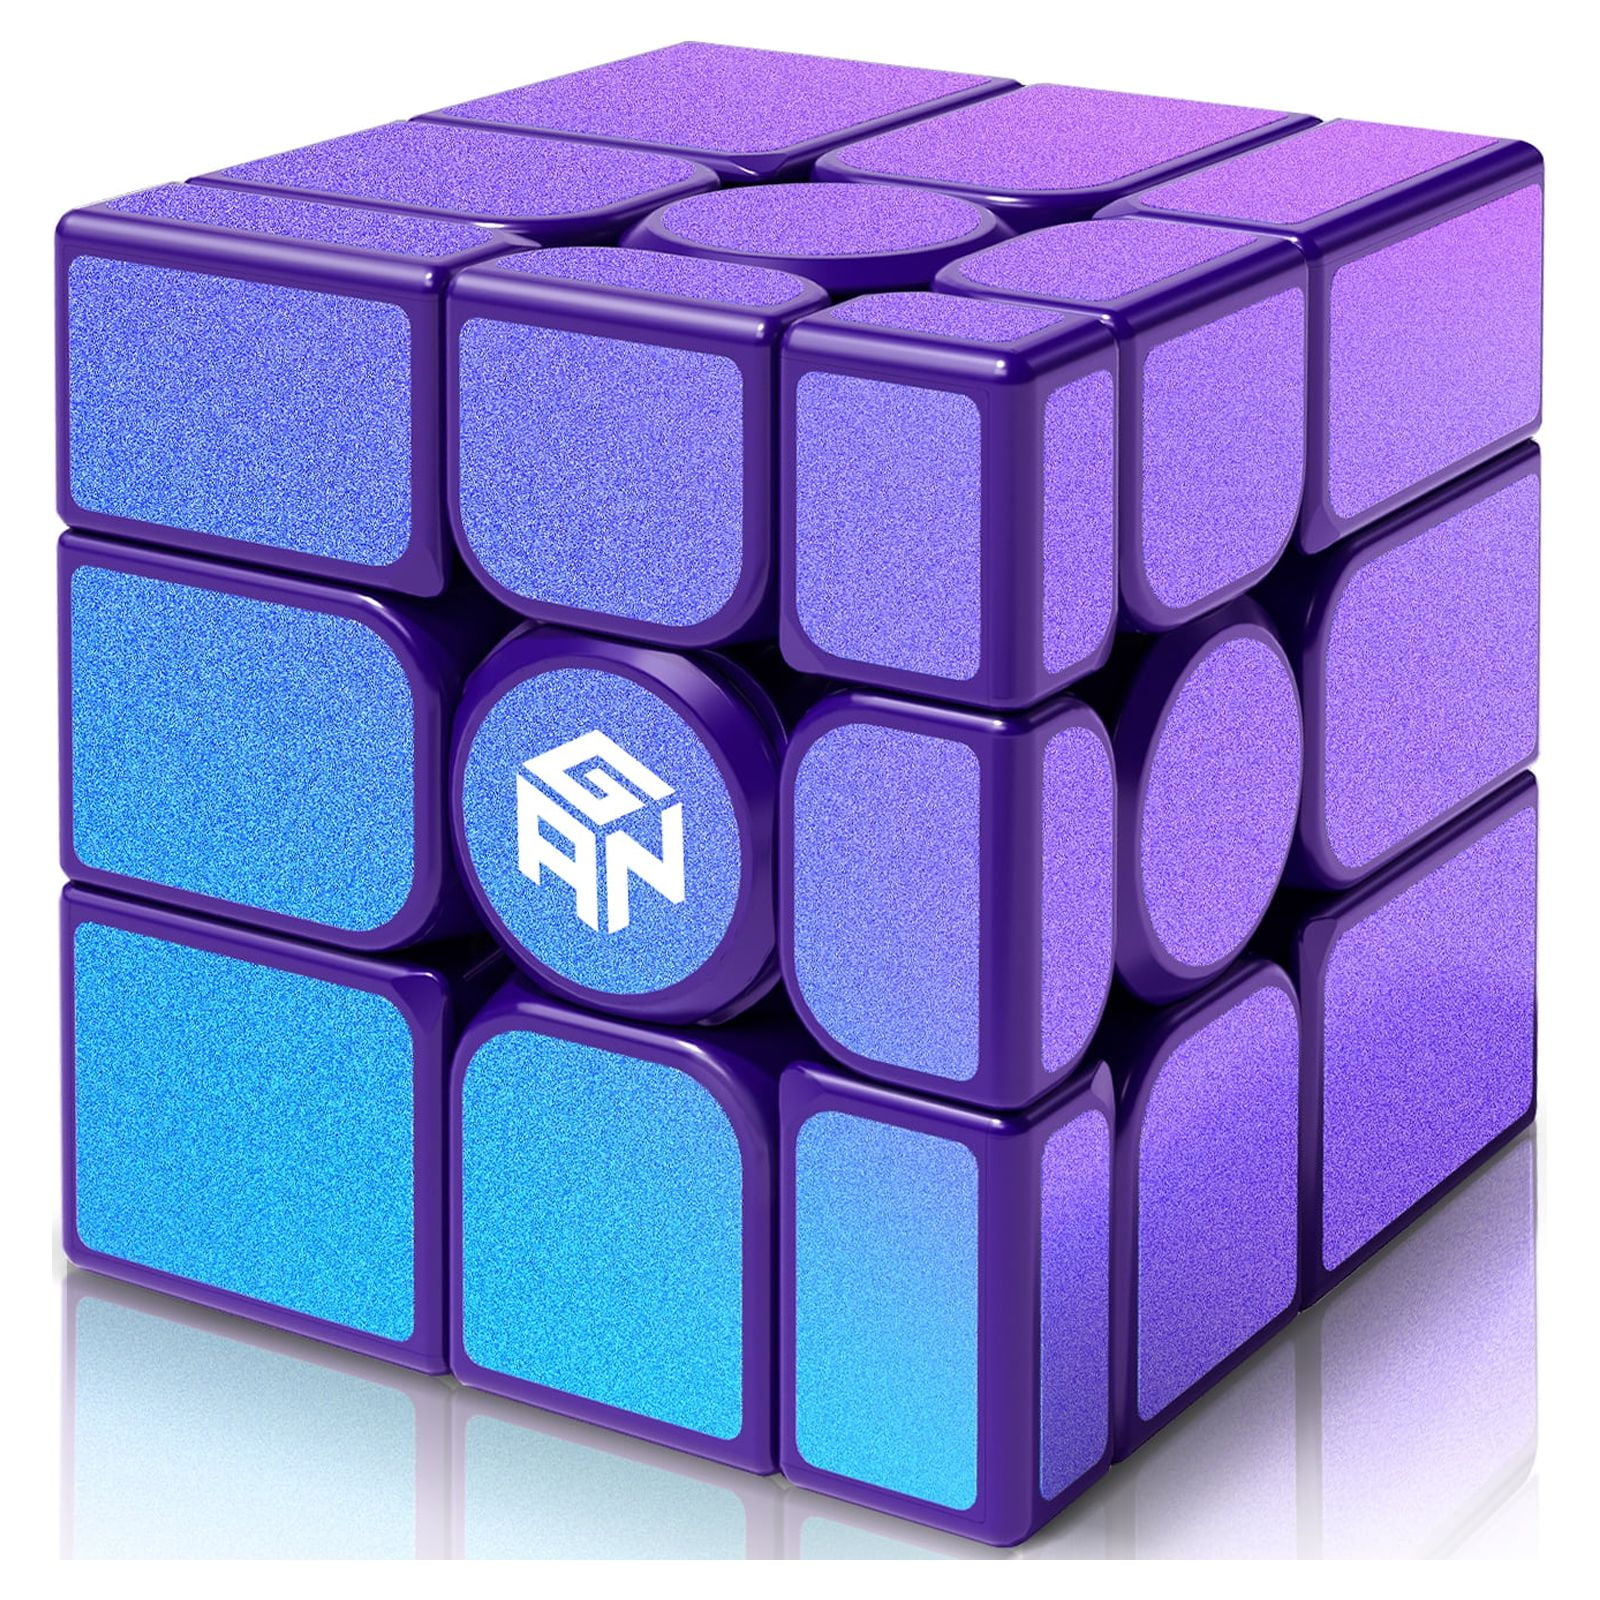 GAN Mirror M, 3x3 Mirror Speed Cube Magnetic Puzzle Toys Magic